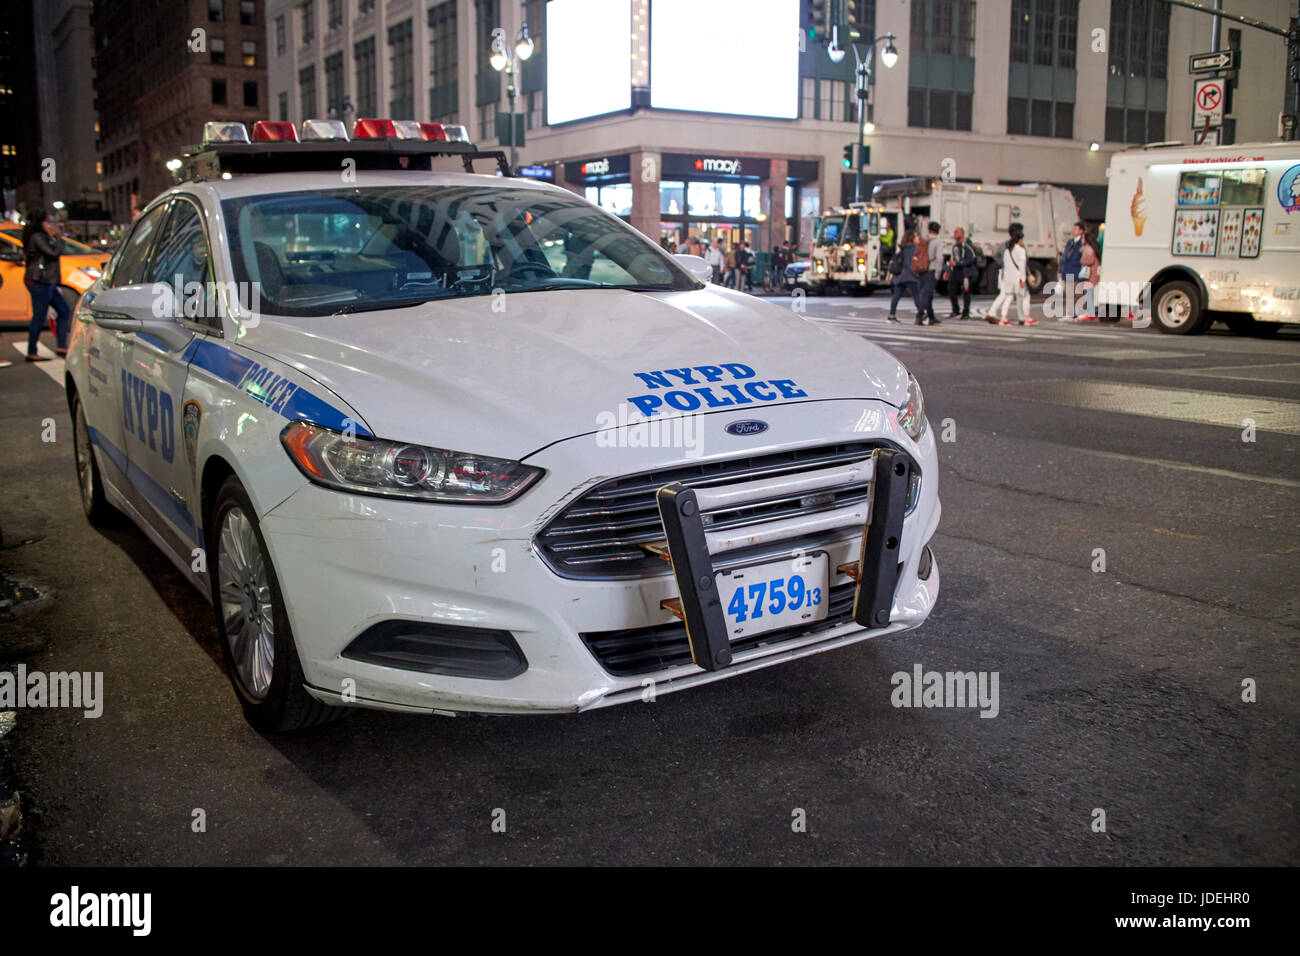 Voiture de patrouille de la police de nypd nuit à New York City USA Banque D'Images